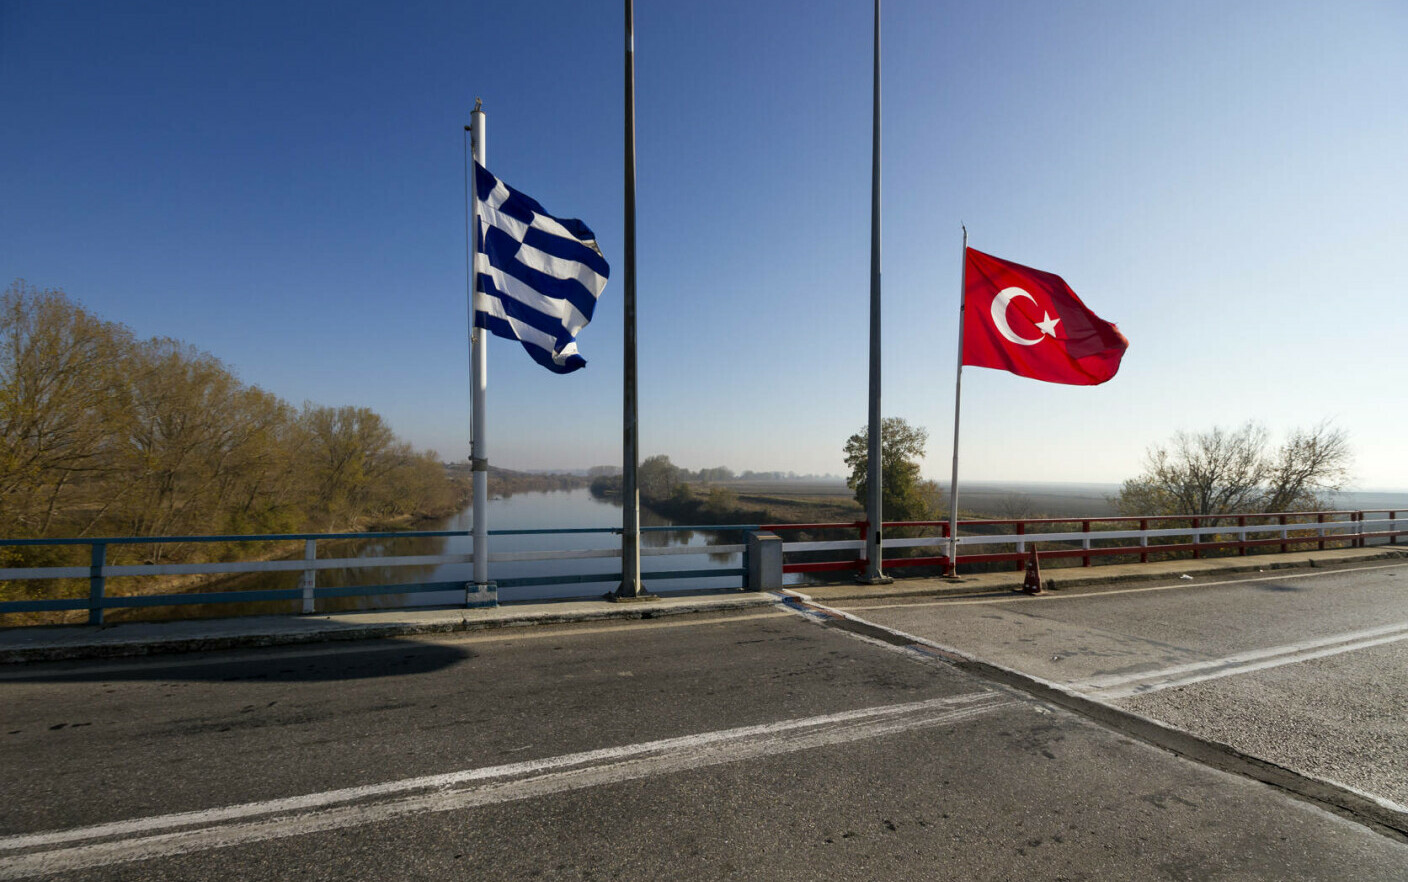 12 μετανάστες πέθαναν από το κρύο στα σύνορα μεταξύ Τουρκίας και Ελλάδας.  Οι χώρες αλληλοκατηγορούνται